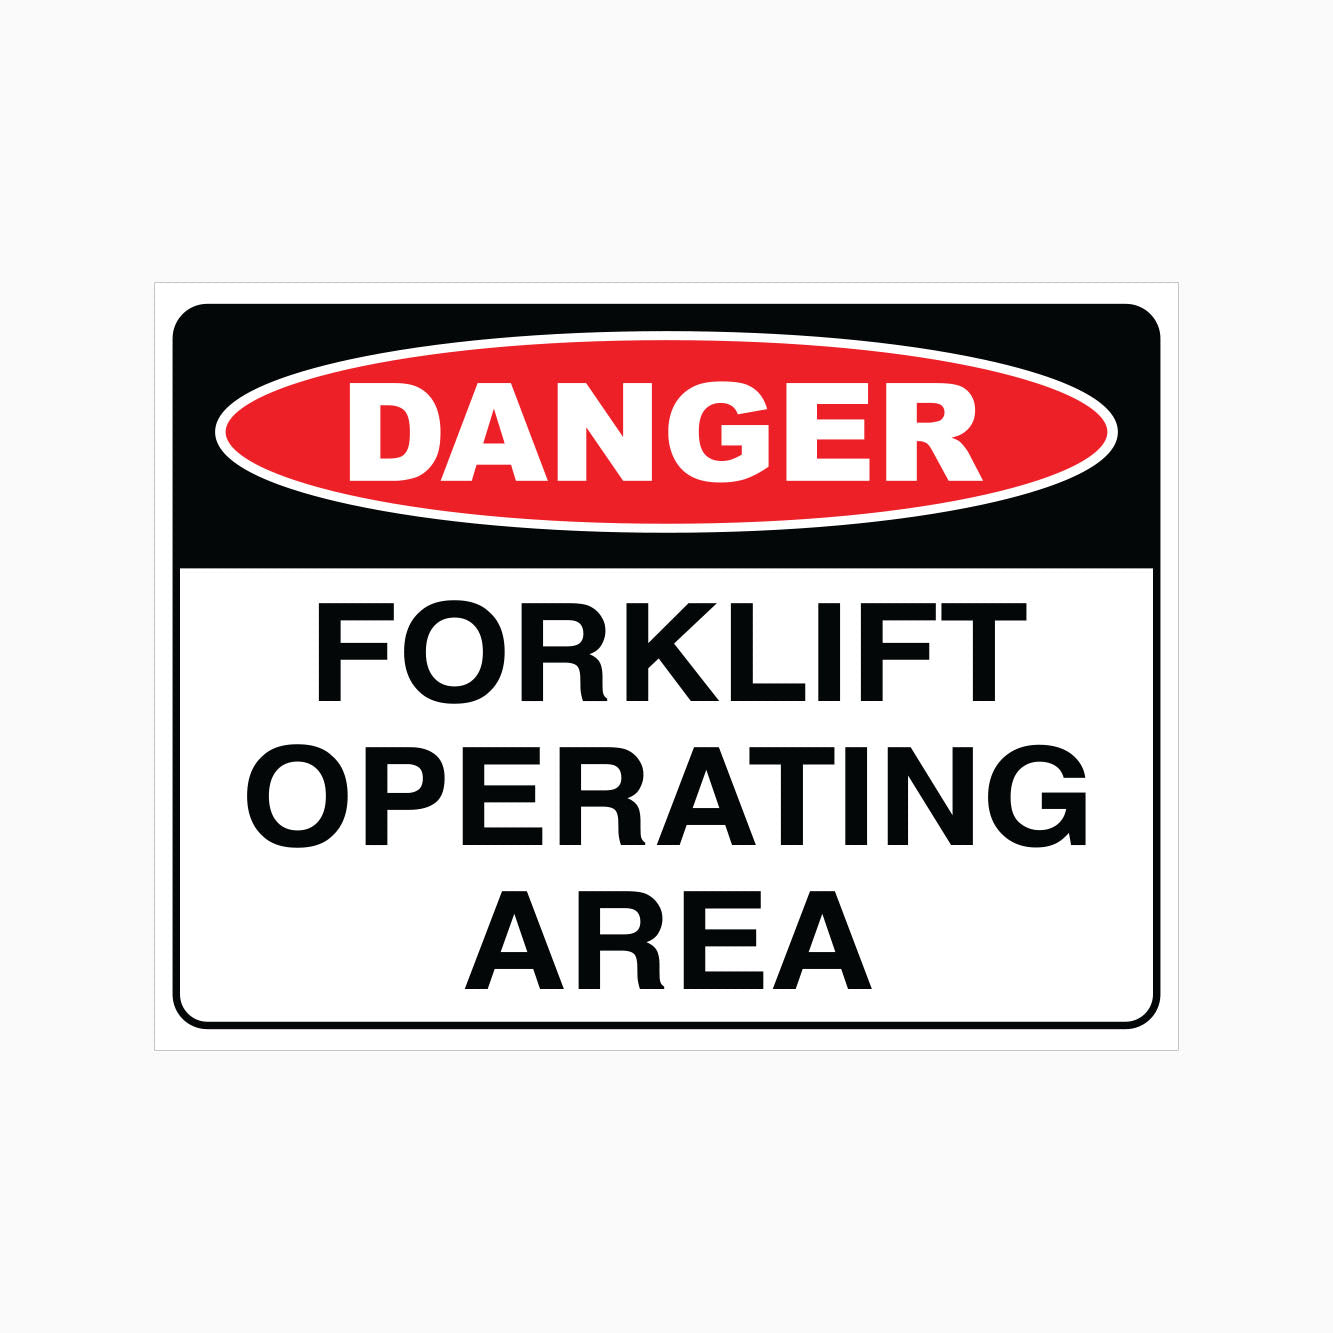 DANGER FORKLIFT OPERATING AREA SIGN